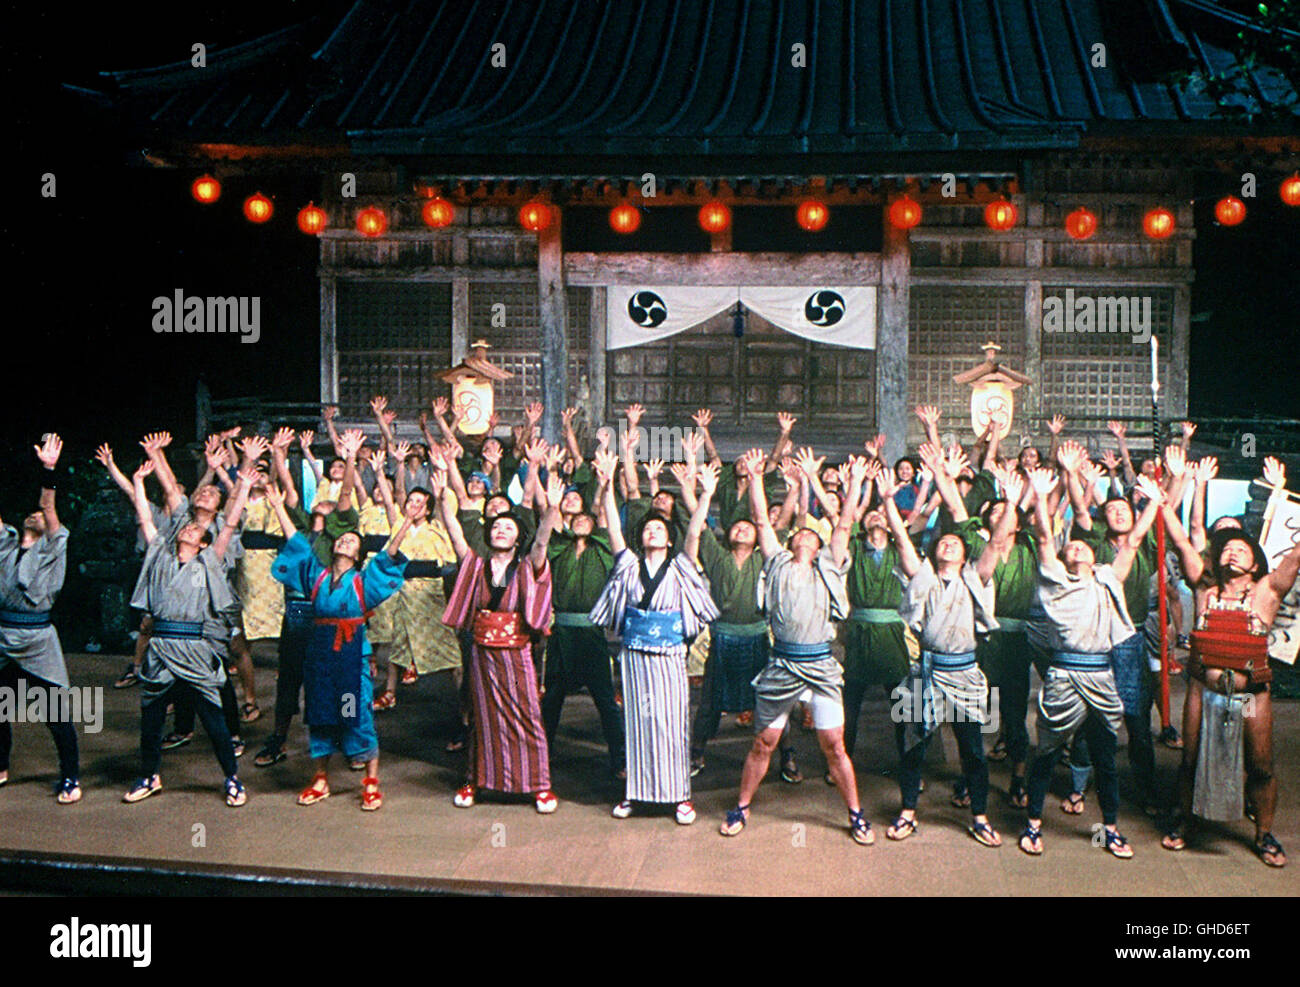 ZATOICHI - DER BLINDE SAMURAI / Zatoichi JAP 2003 / Takeshi Kitano Szene Regie: Takeshi Kitano aka. Zatoichi Stock Photo